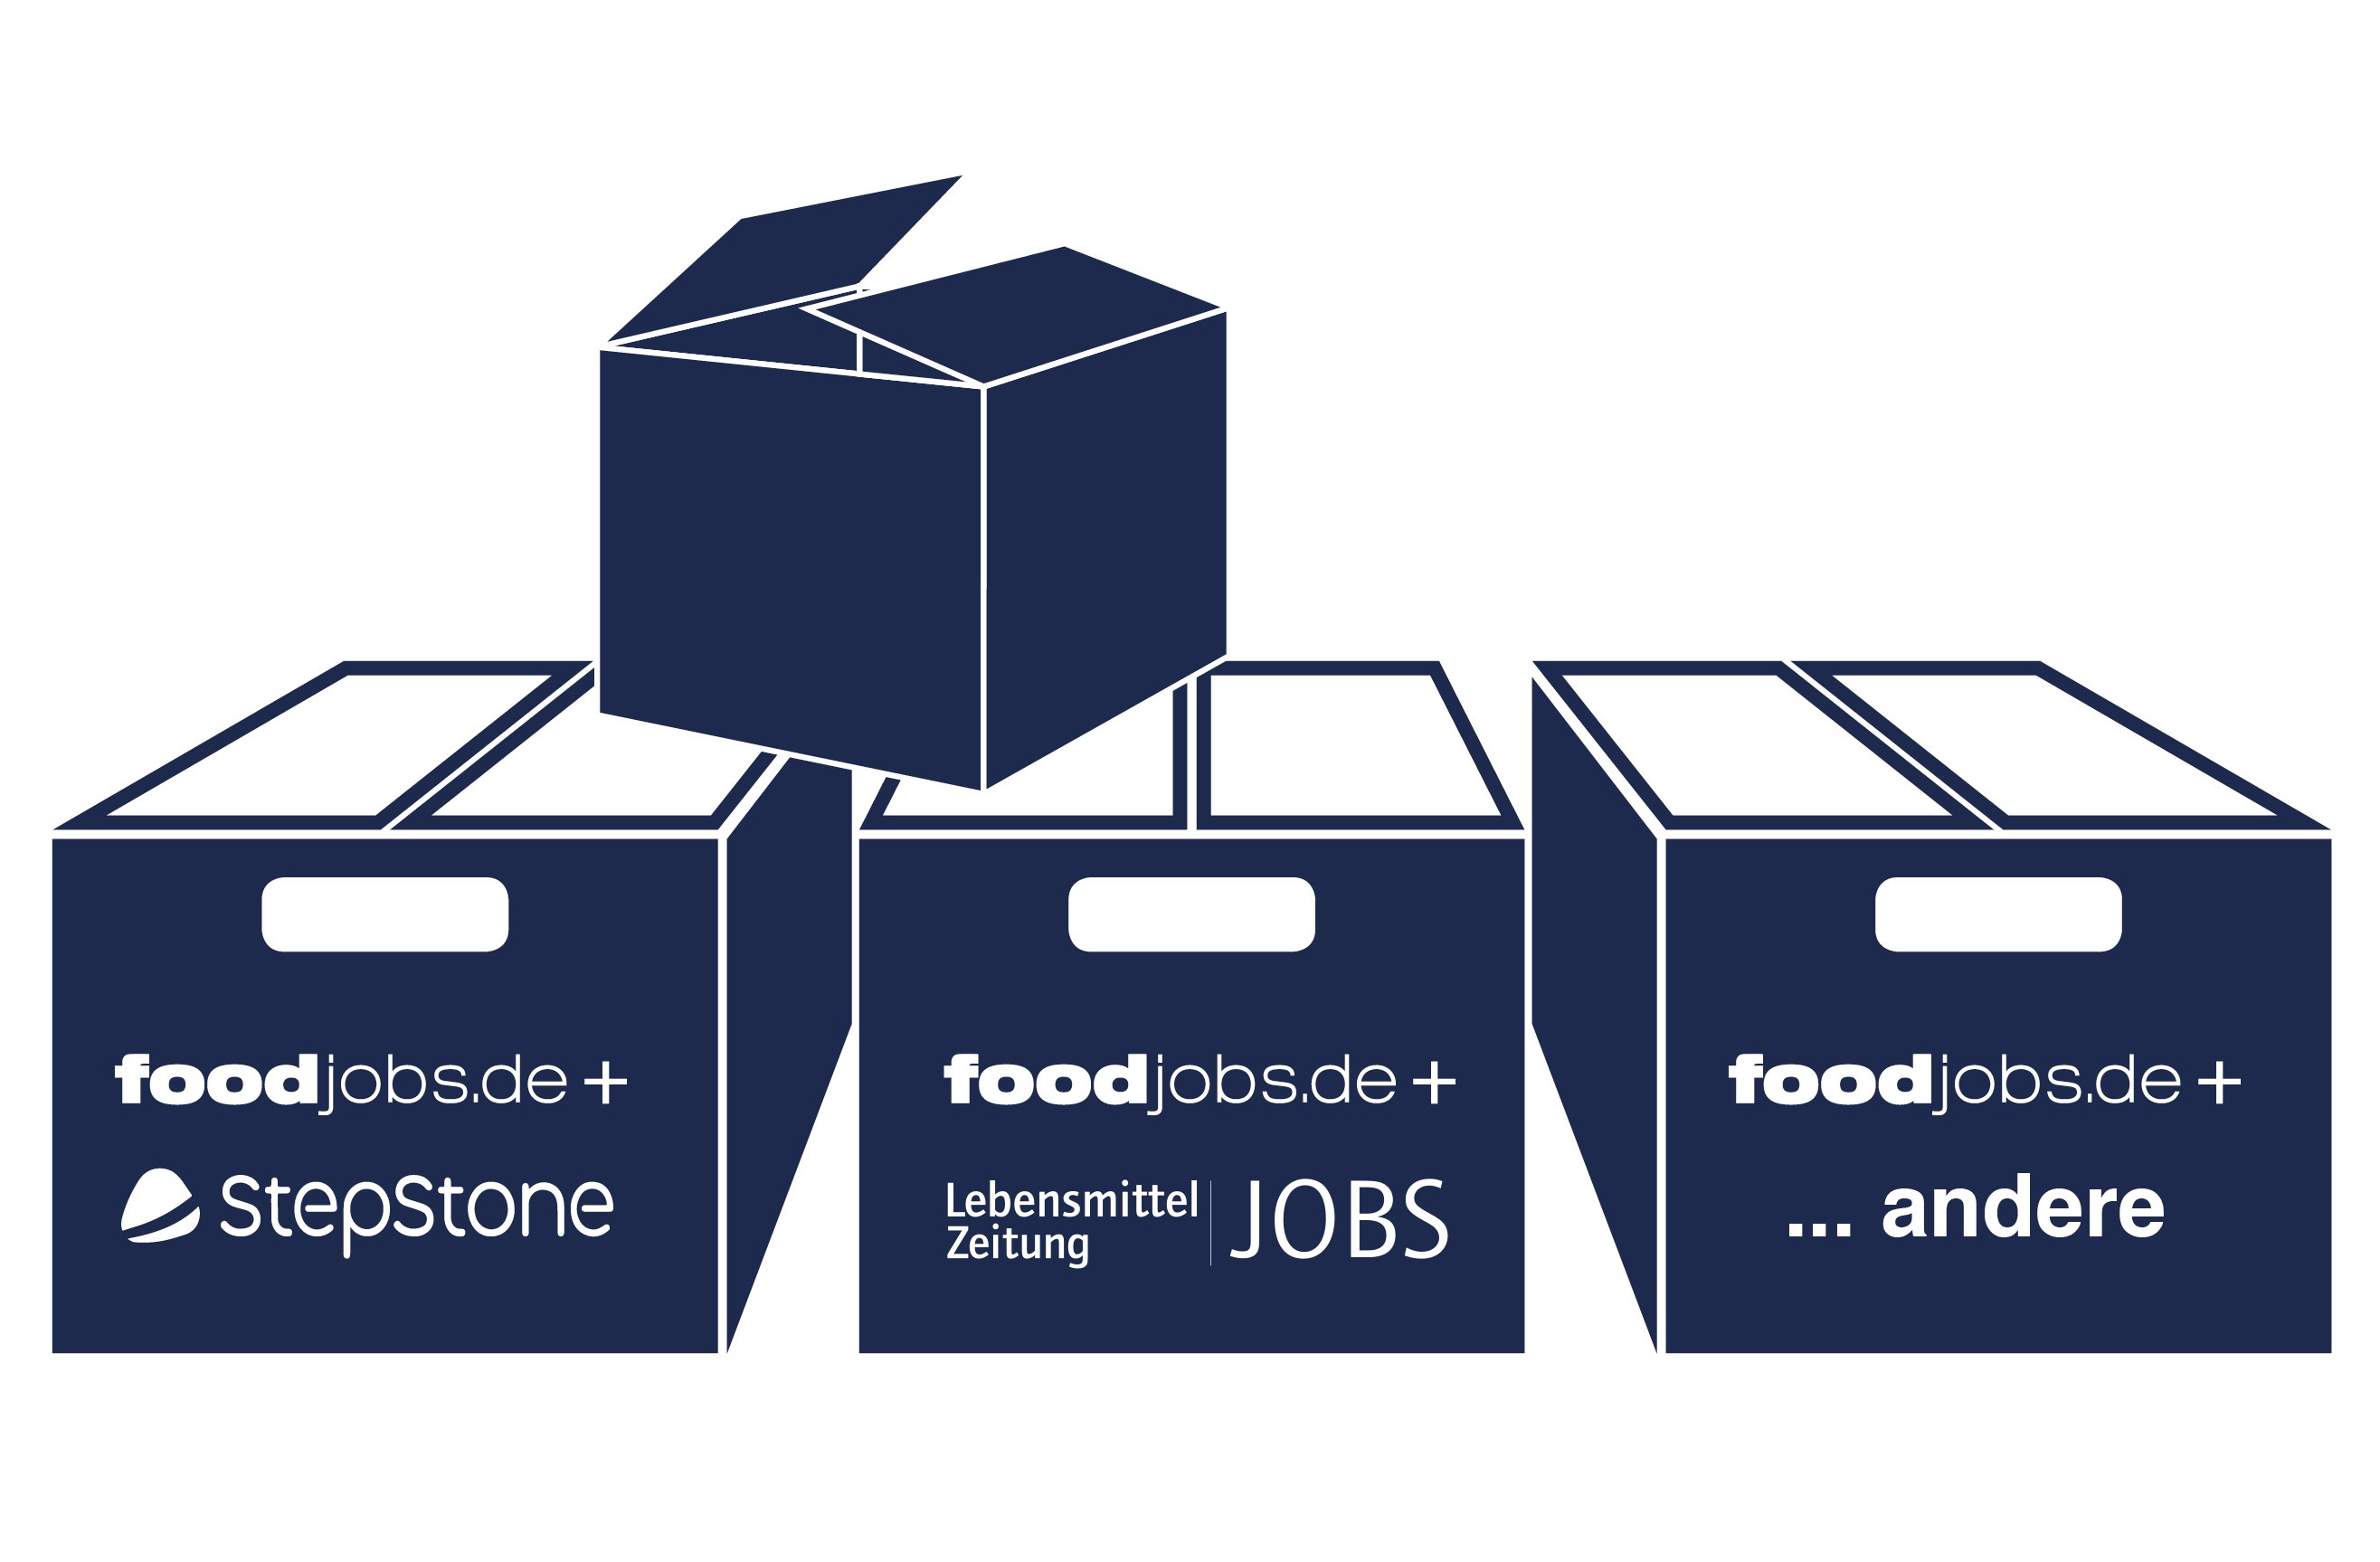 foodjobs Anzeigenpakete mit Stepstone und Regio-Jobanzeiger